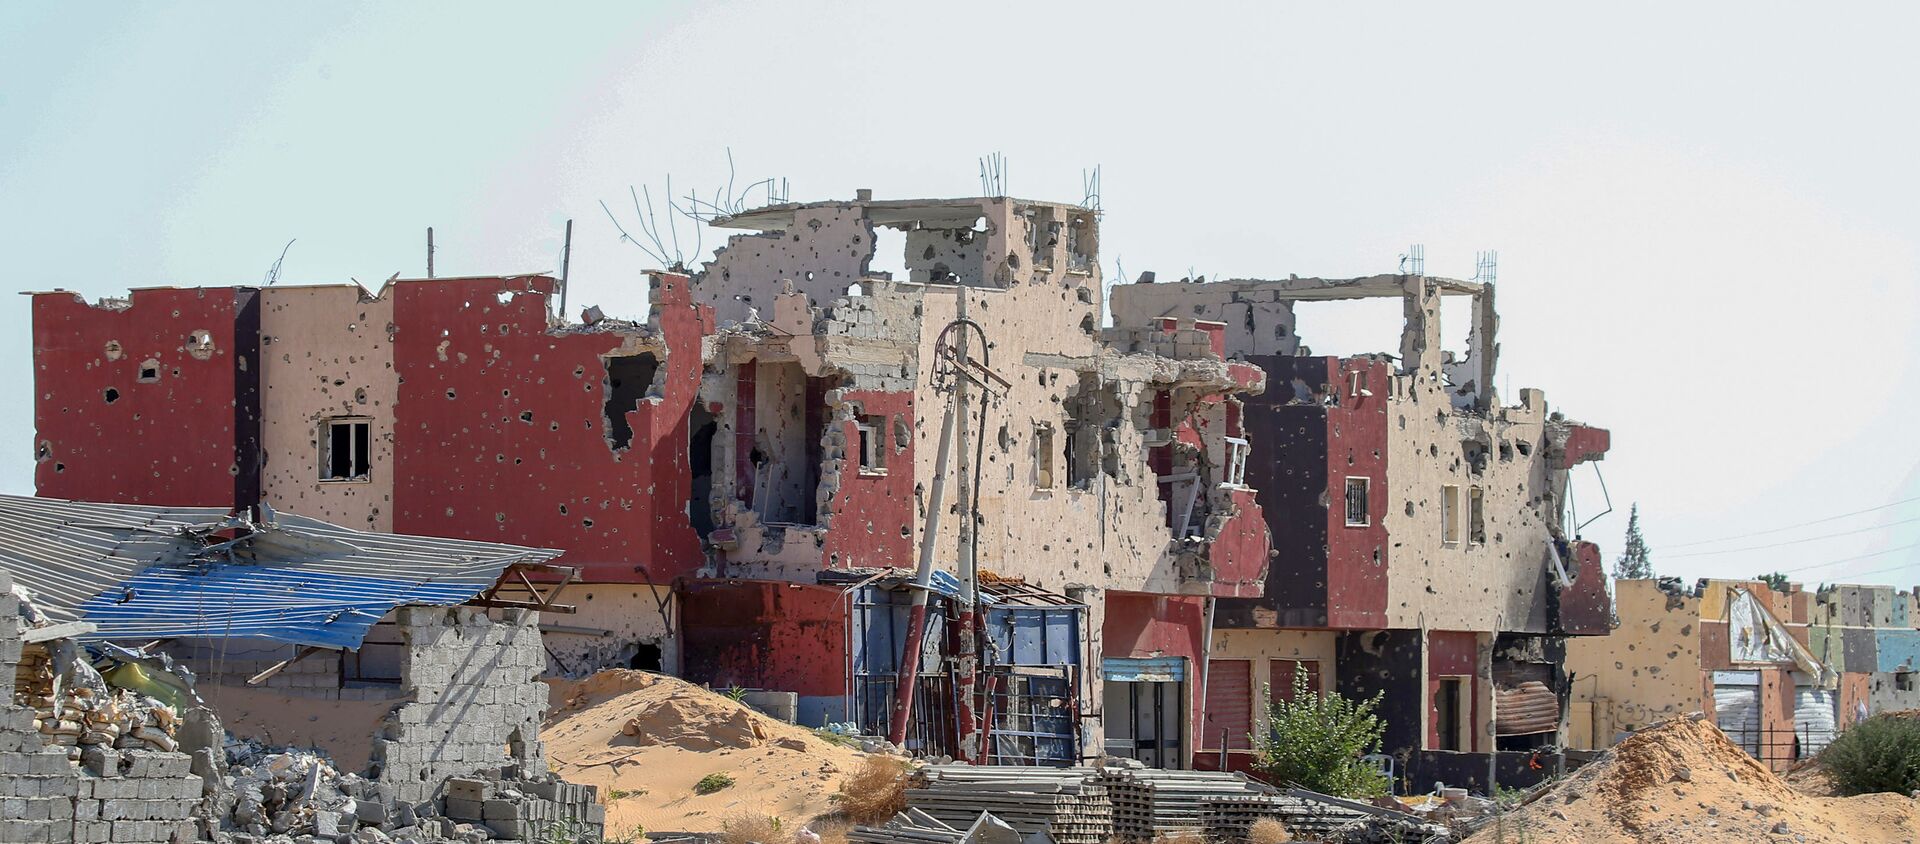 Libya'da çatışmalardan zarar görmüş bir bina - Sputnik Türkiye, 1920, 24.06.2021